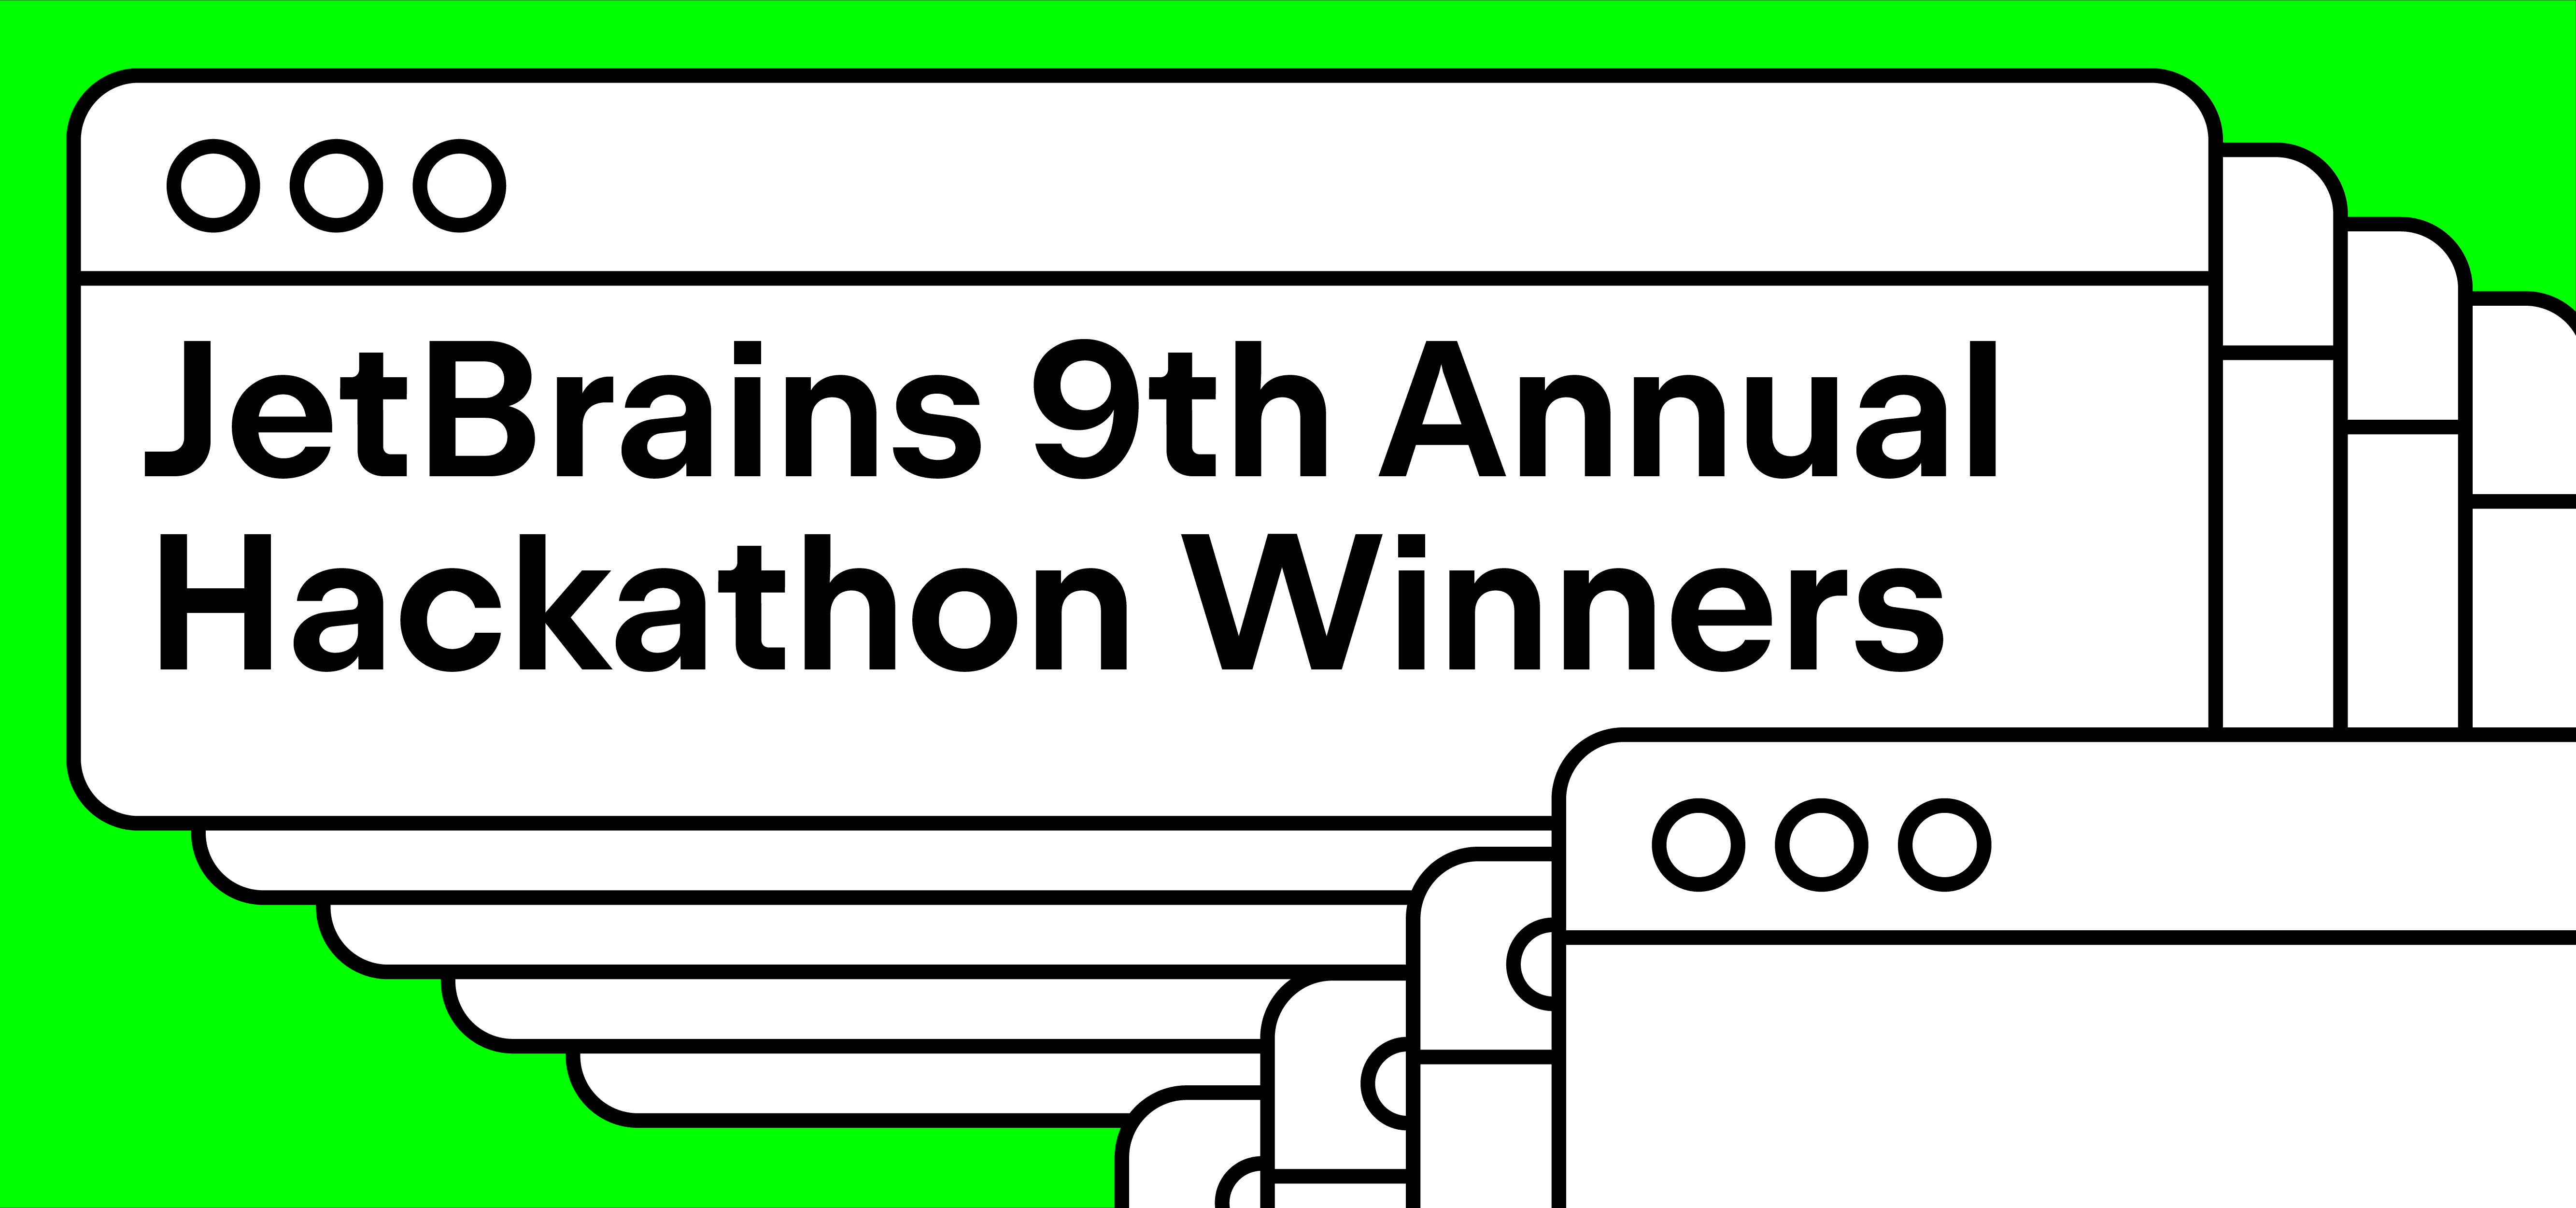 JetBrains 9th Annual Hackathon